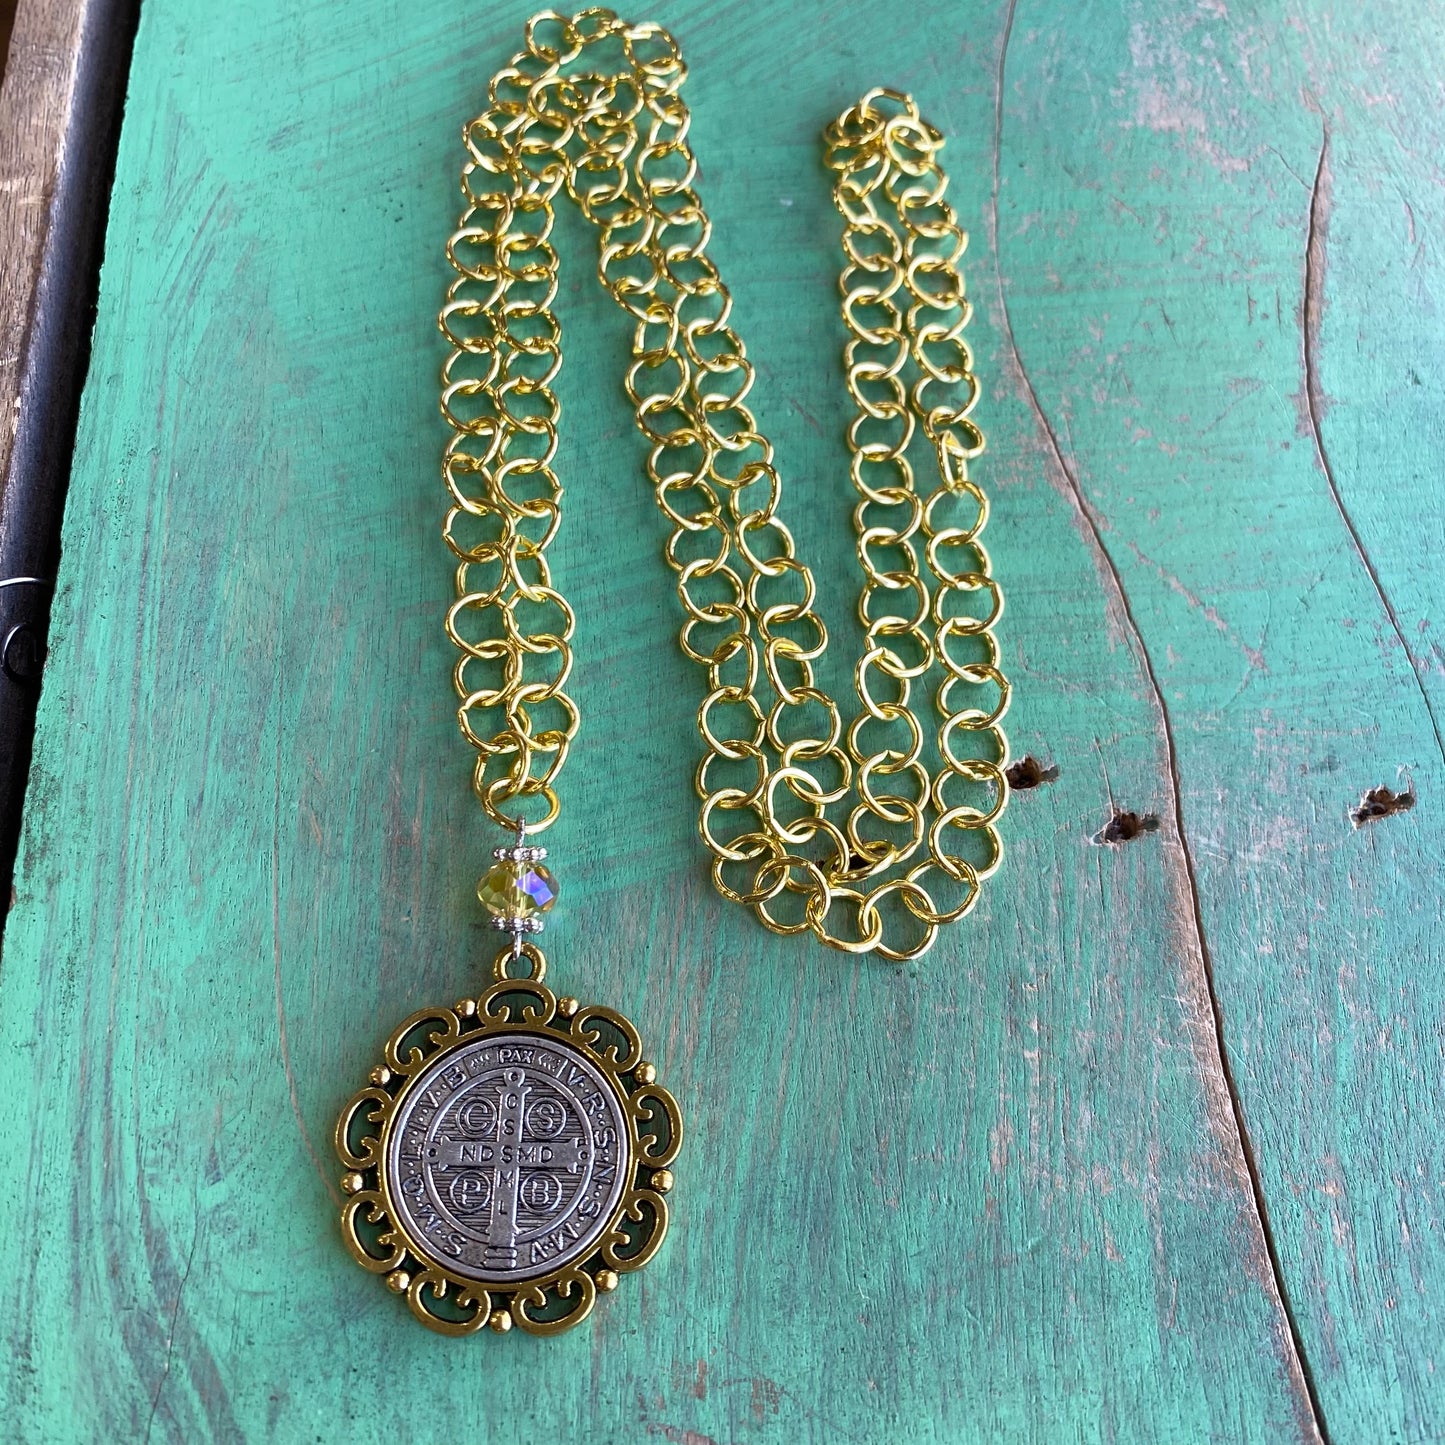 $5 Necklace Special